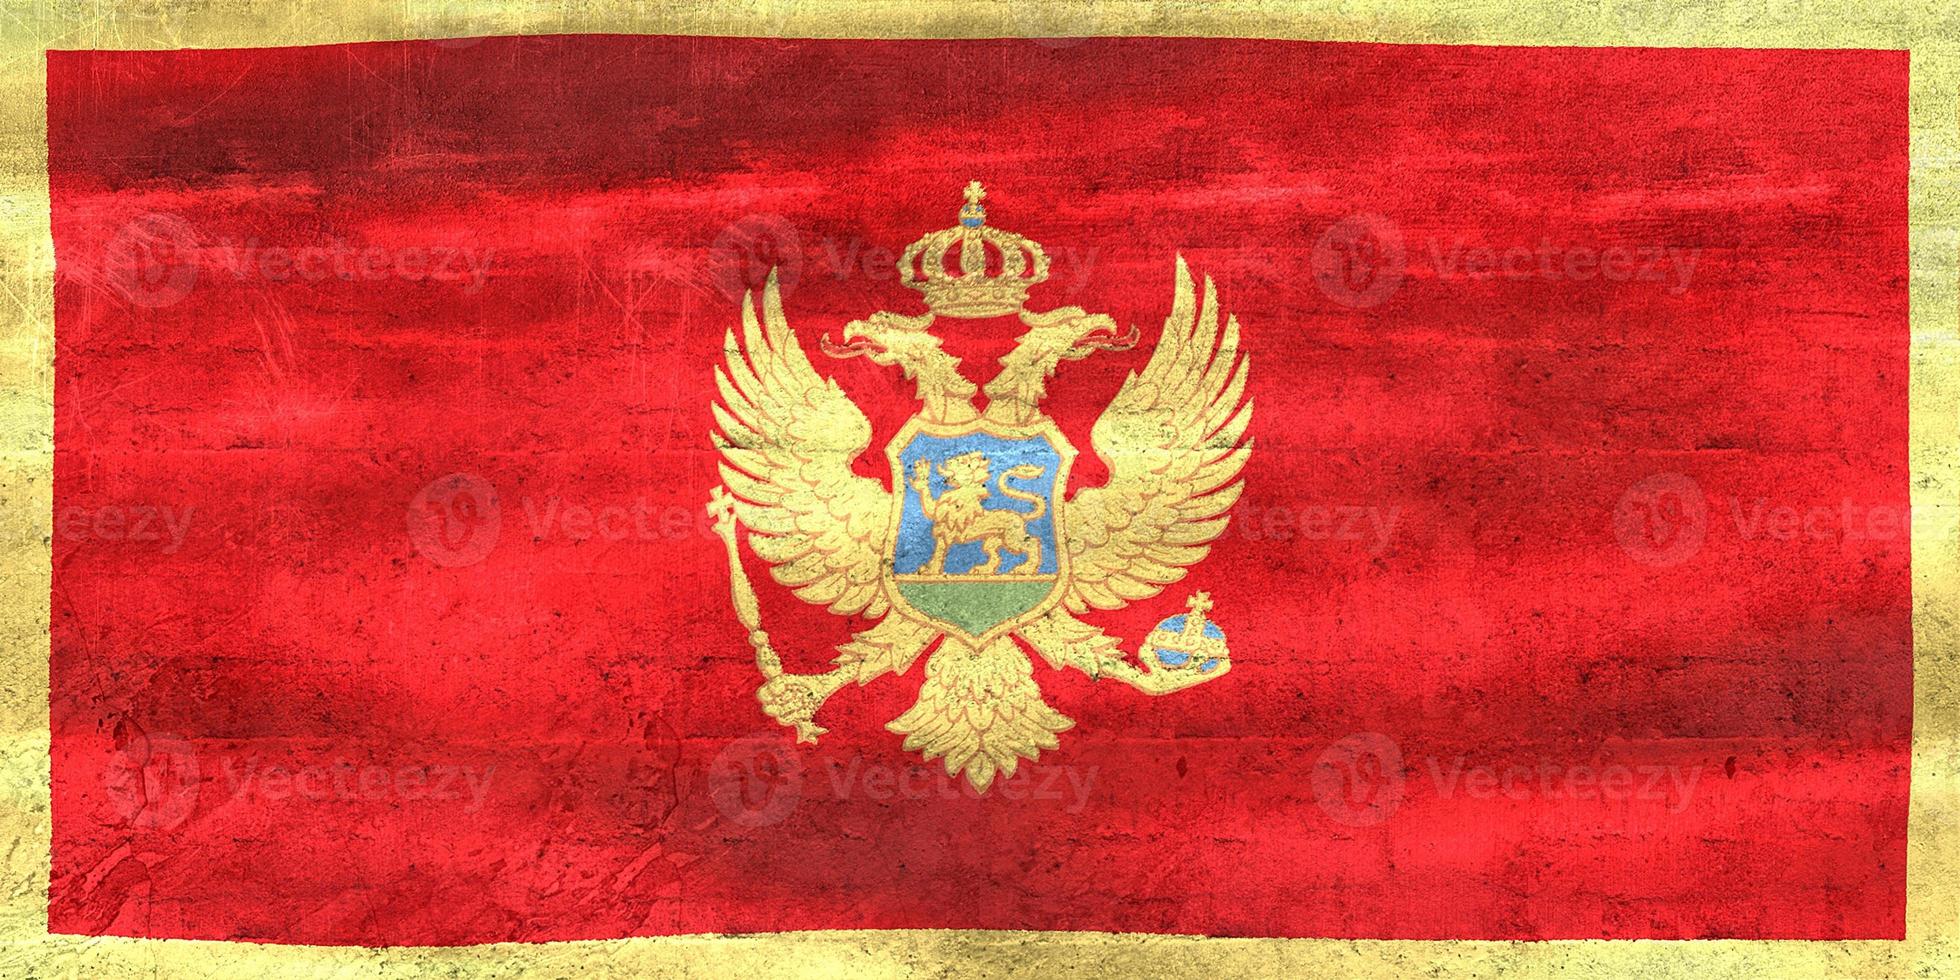 3D-illustratie van een vlag van Montenegro - realistische wapperende stoffen vlag foto